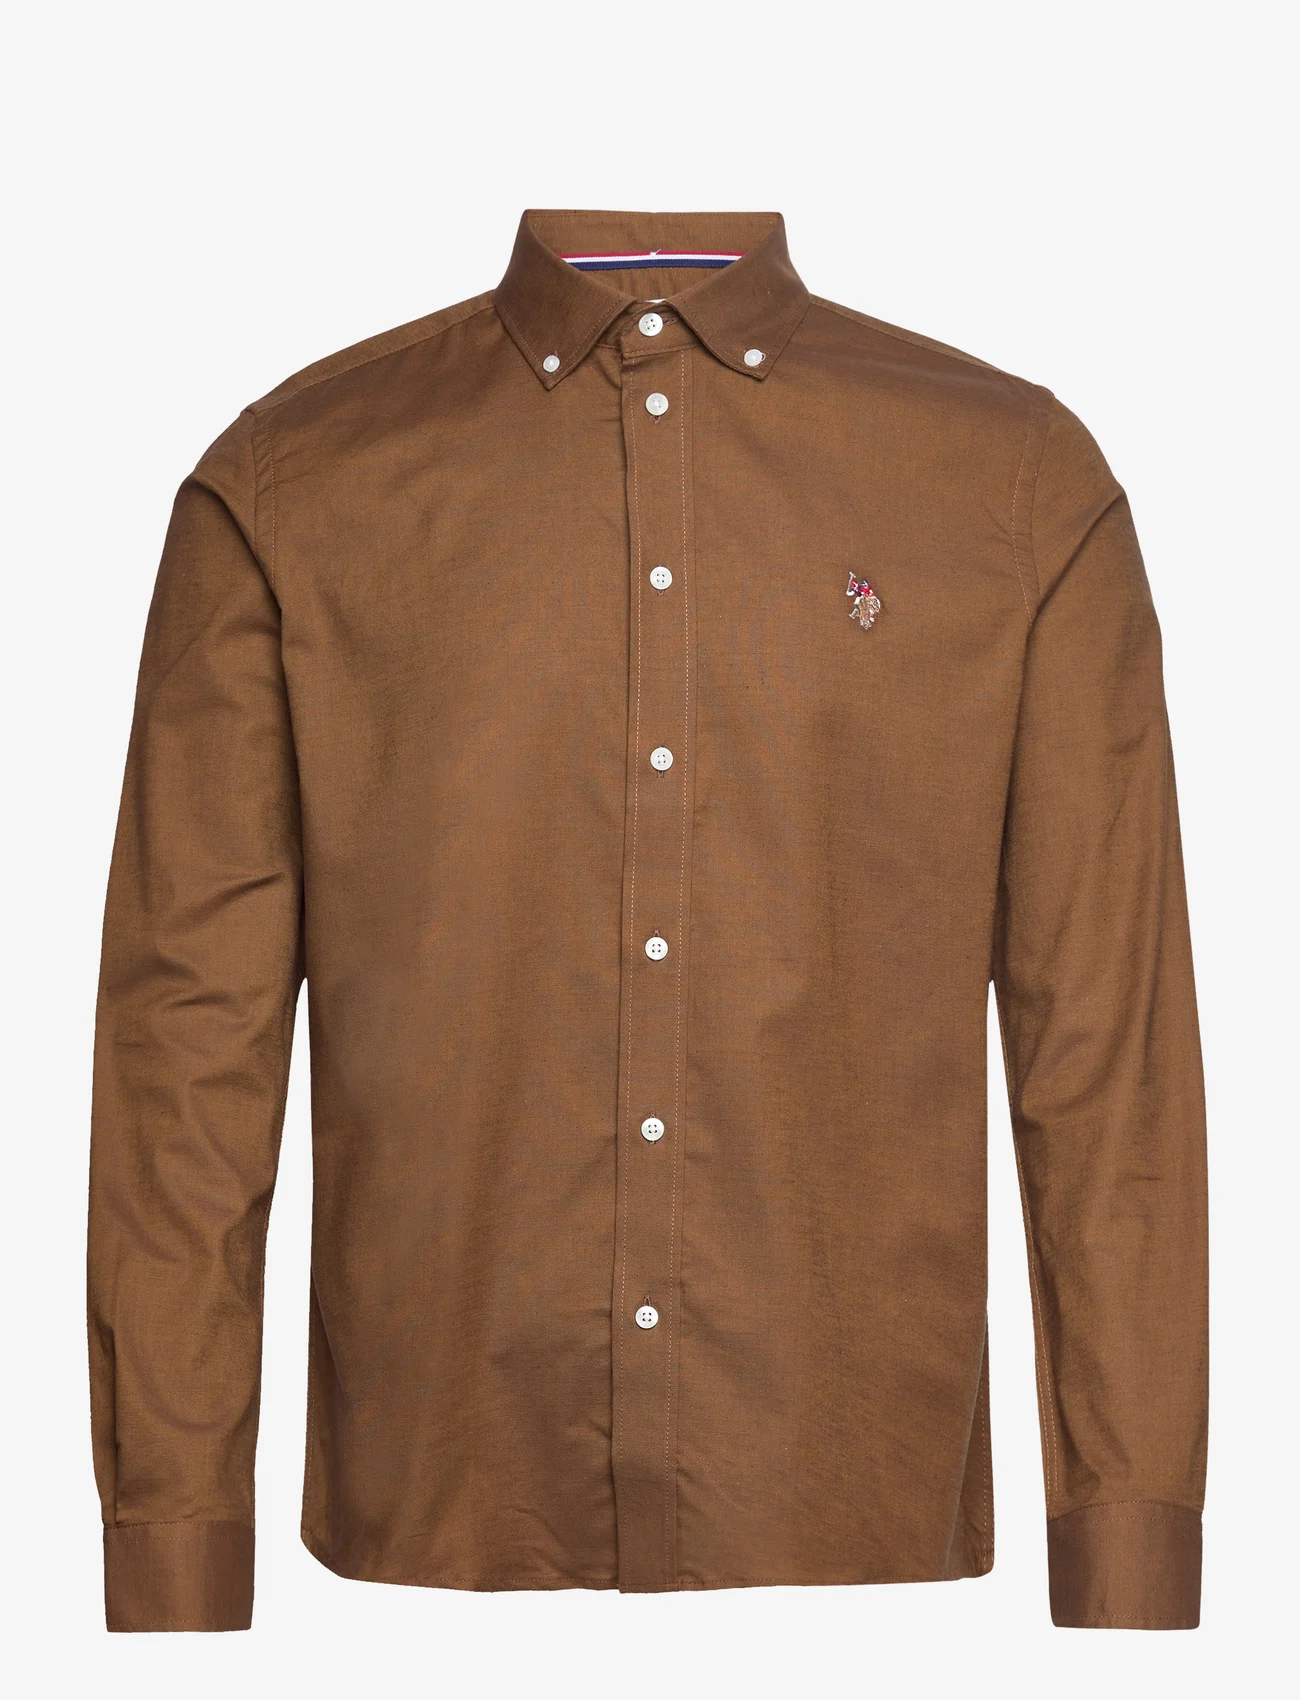 U.S. Polo Assn. - USPA Shirt Flex Calvert Men - basic shirts - rubber - 0